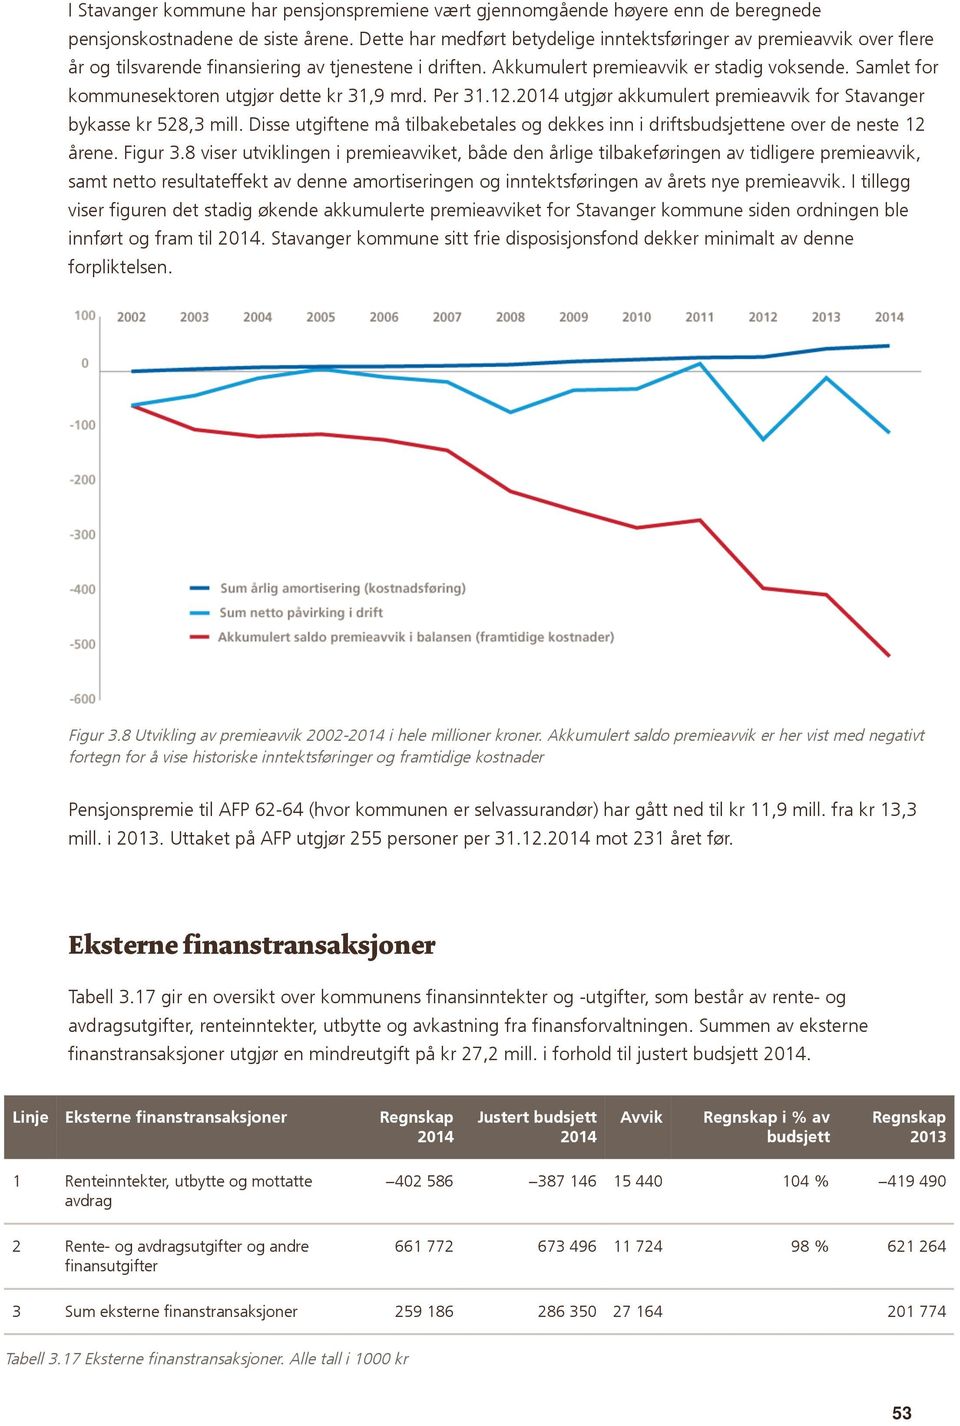 Samlet for kommunesektoren utgjør dette kr 31,9 mrd. Per 31.12.2014 utgjør akkumulert premieavvik for Stavanger bykasse kr 528,3 mill.